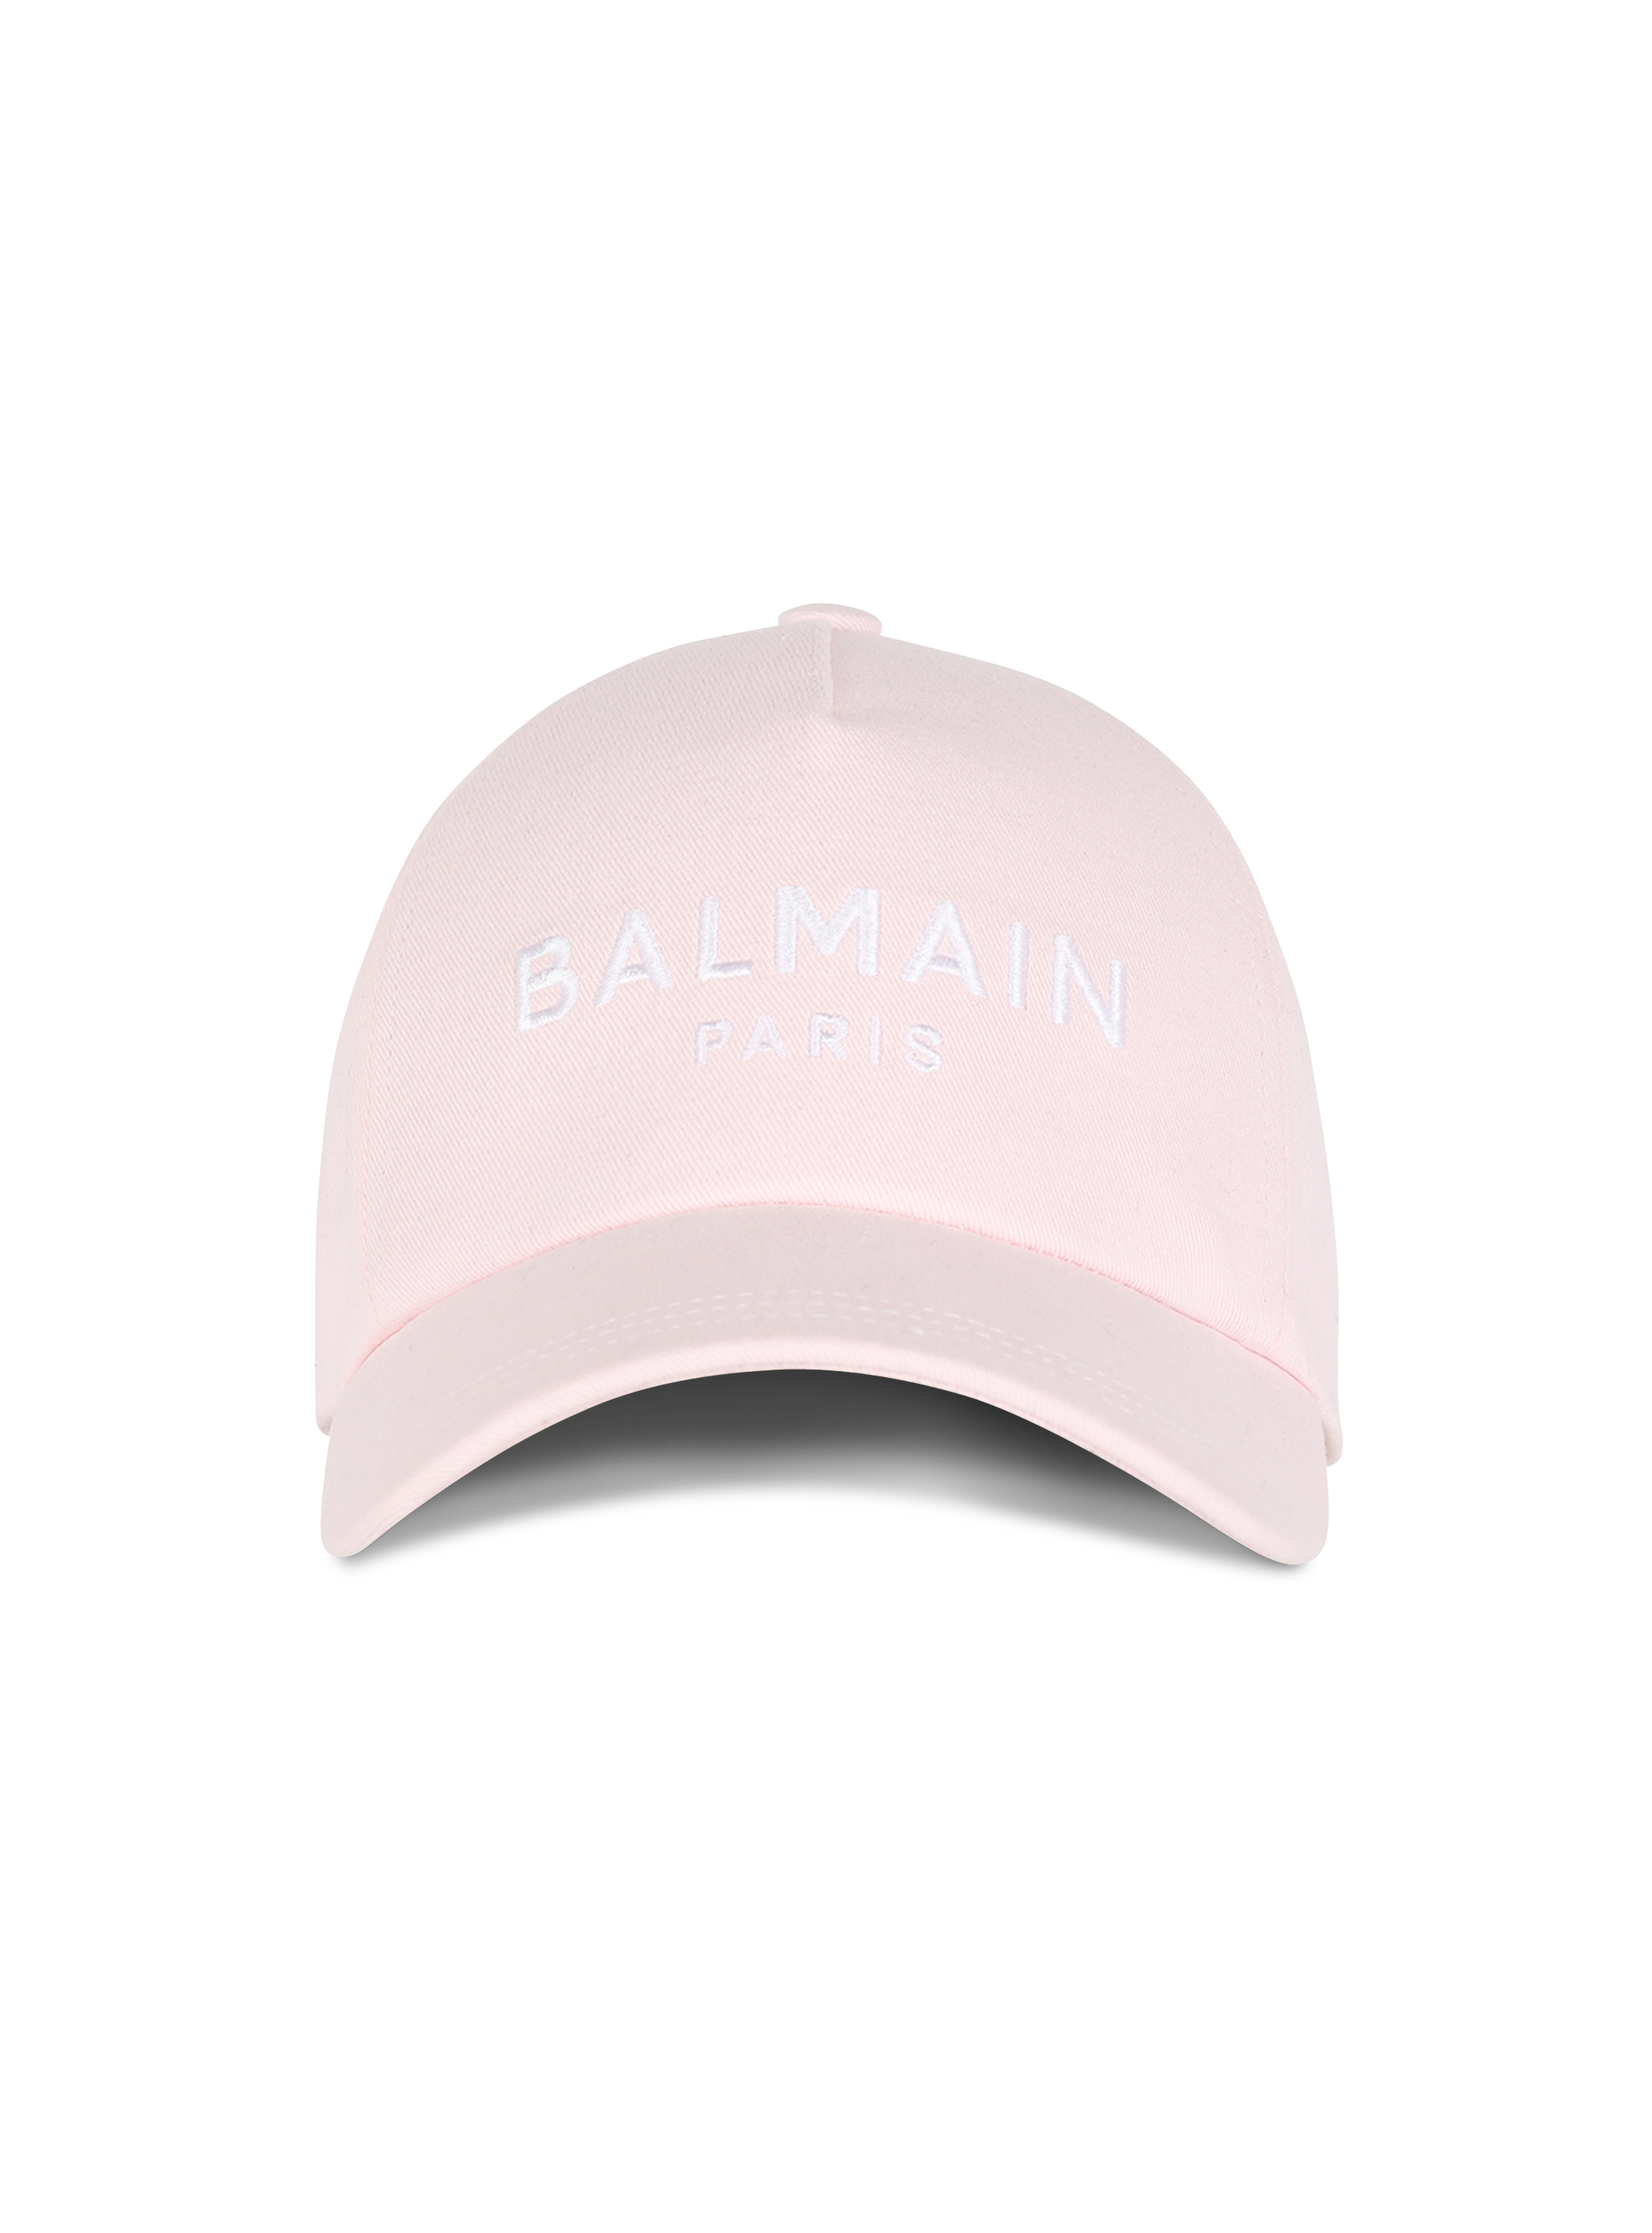 Cotton cap with Balmain logo, pink